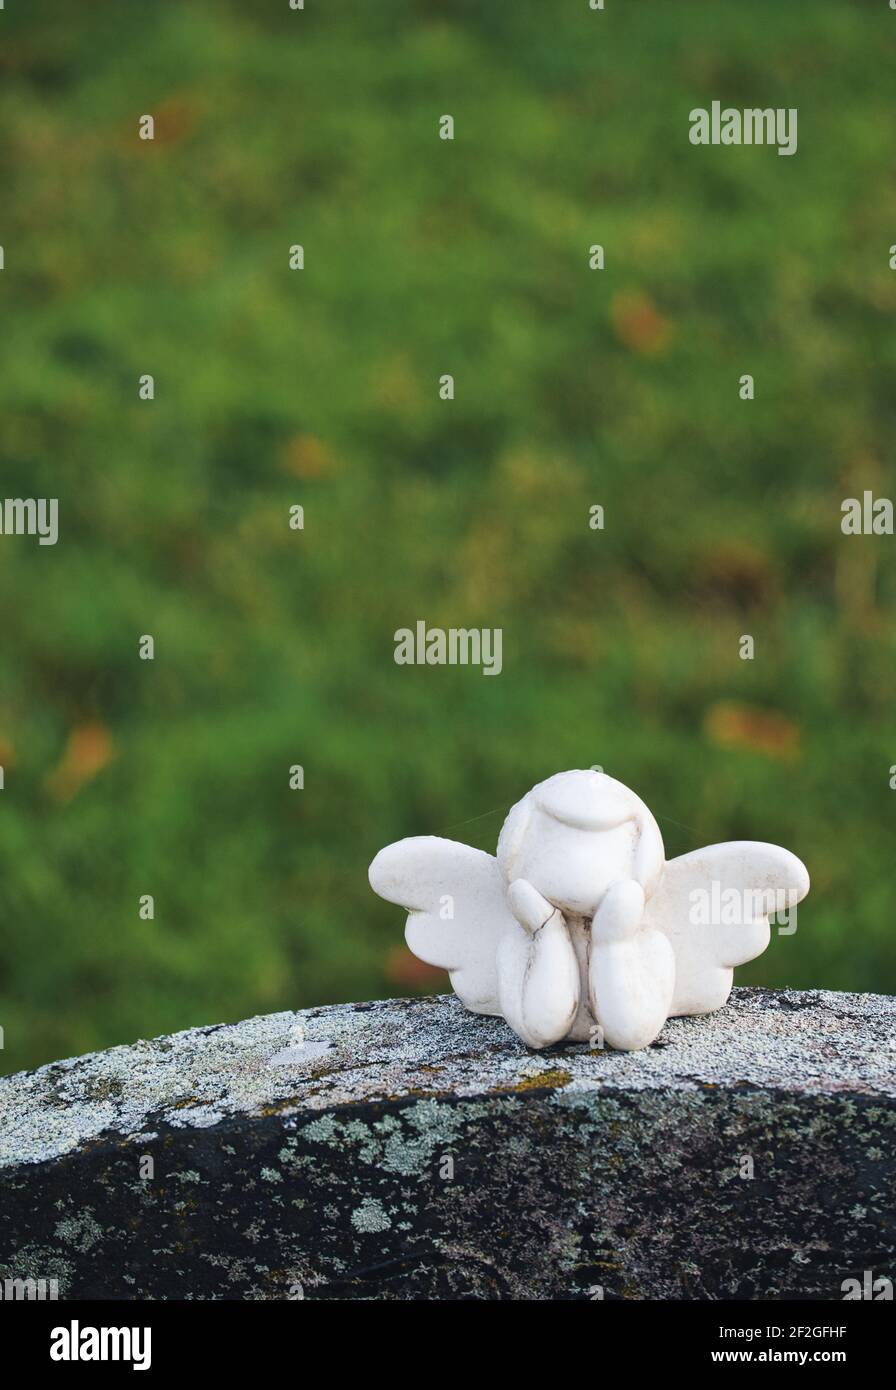 Piccola scultura d'angelo senza volto bianca alata con testa in mano sopra la lapide. Concetto di memoria, morte, spiritualità Foto Stock